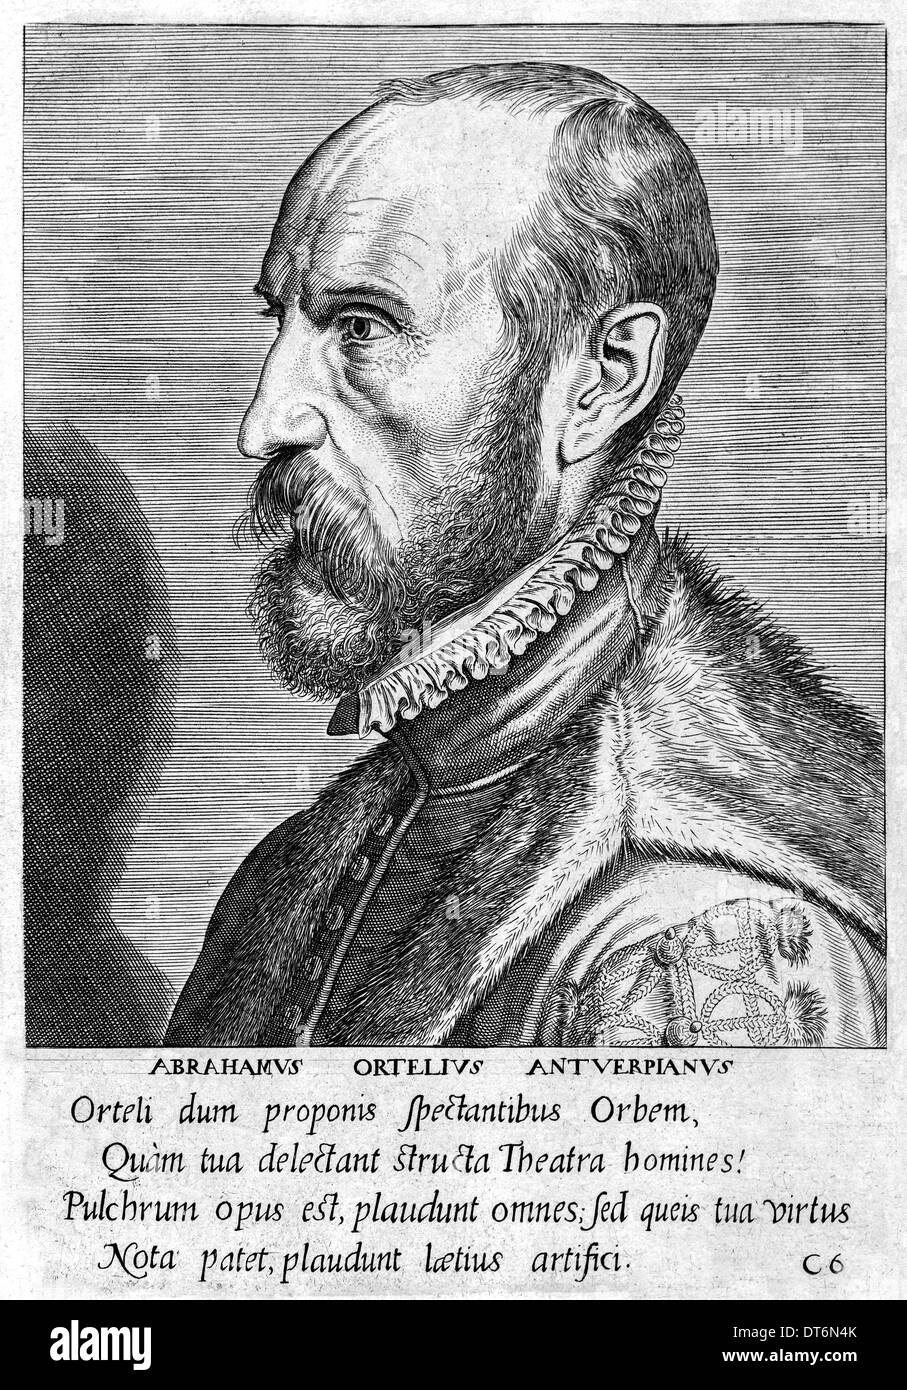 Abraham Ortelius (1527-1598) cartografo fiammingo creatore del primo moderno atlas Theatrum Orbis Terrarum (teatro del mondo). Foto Stock